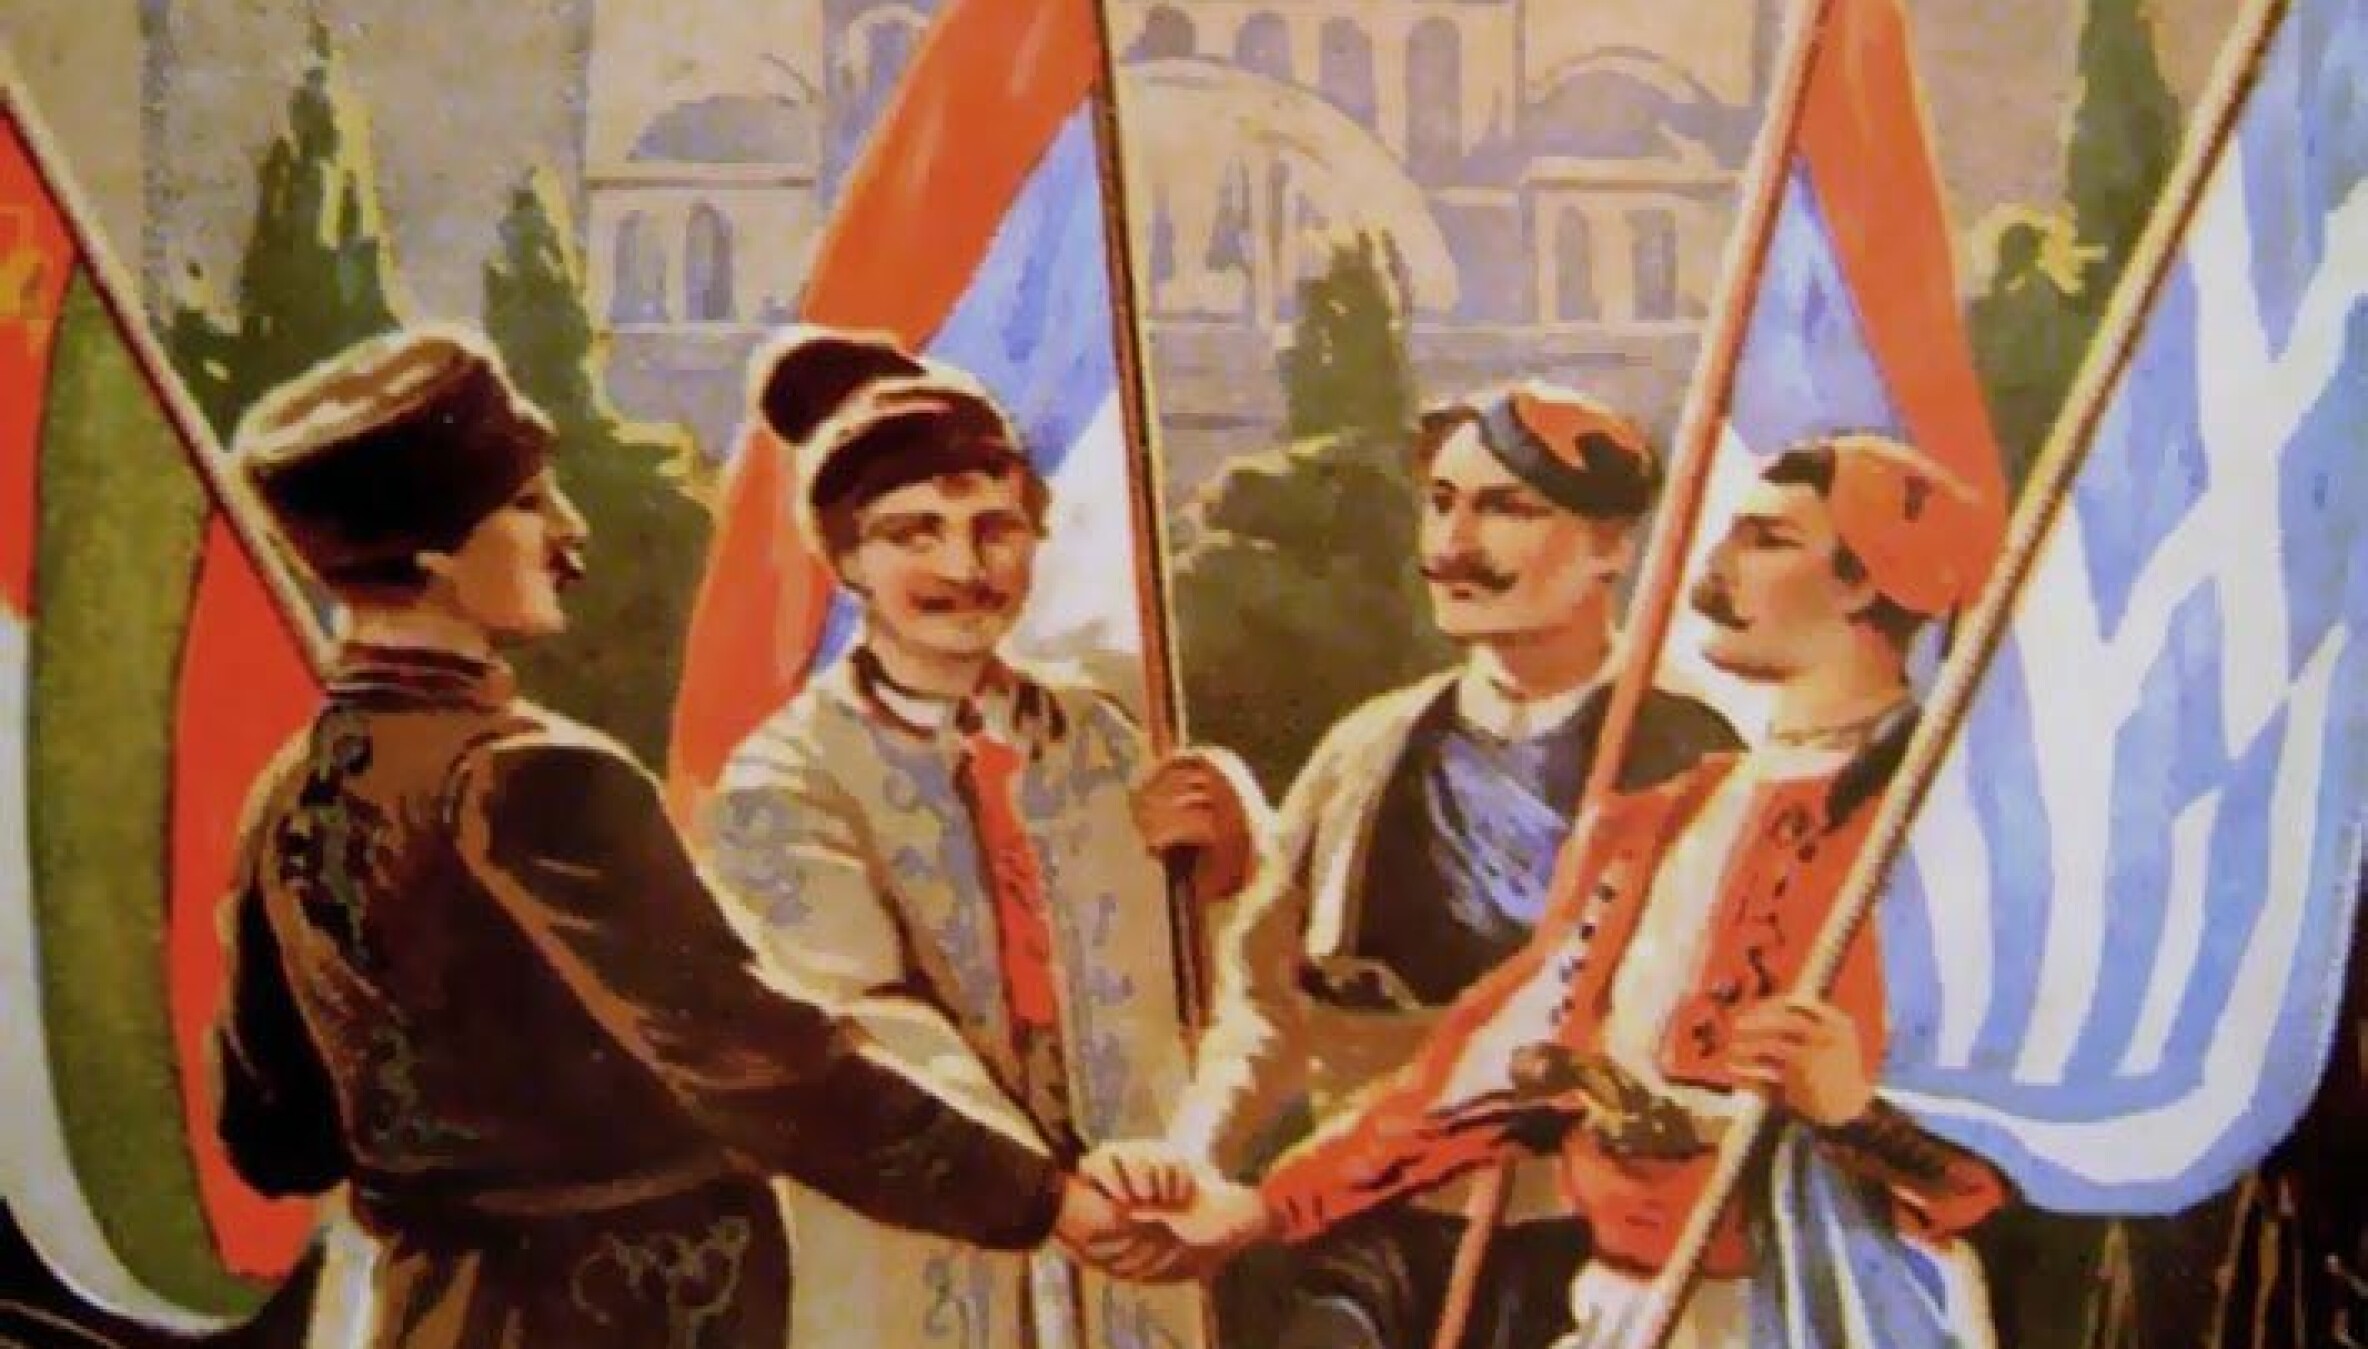 BALKAN-LIGAEN: Bulgaria, Serbia, Montenegro og Hellas gikk i 1912 sammen om å kaste osmanerne ut av Balkan. Det førte til en ti år lang krig, og konflikter som vi fortsatt ser tydelige spor av.